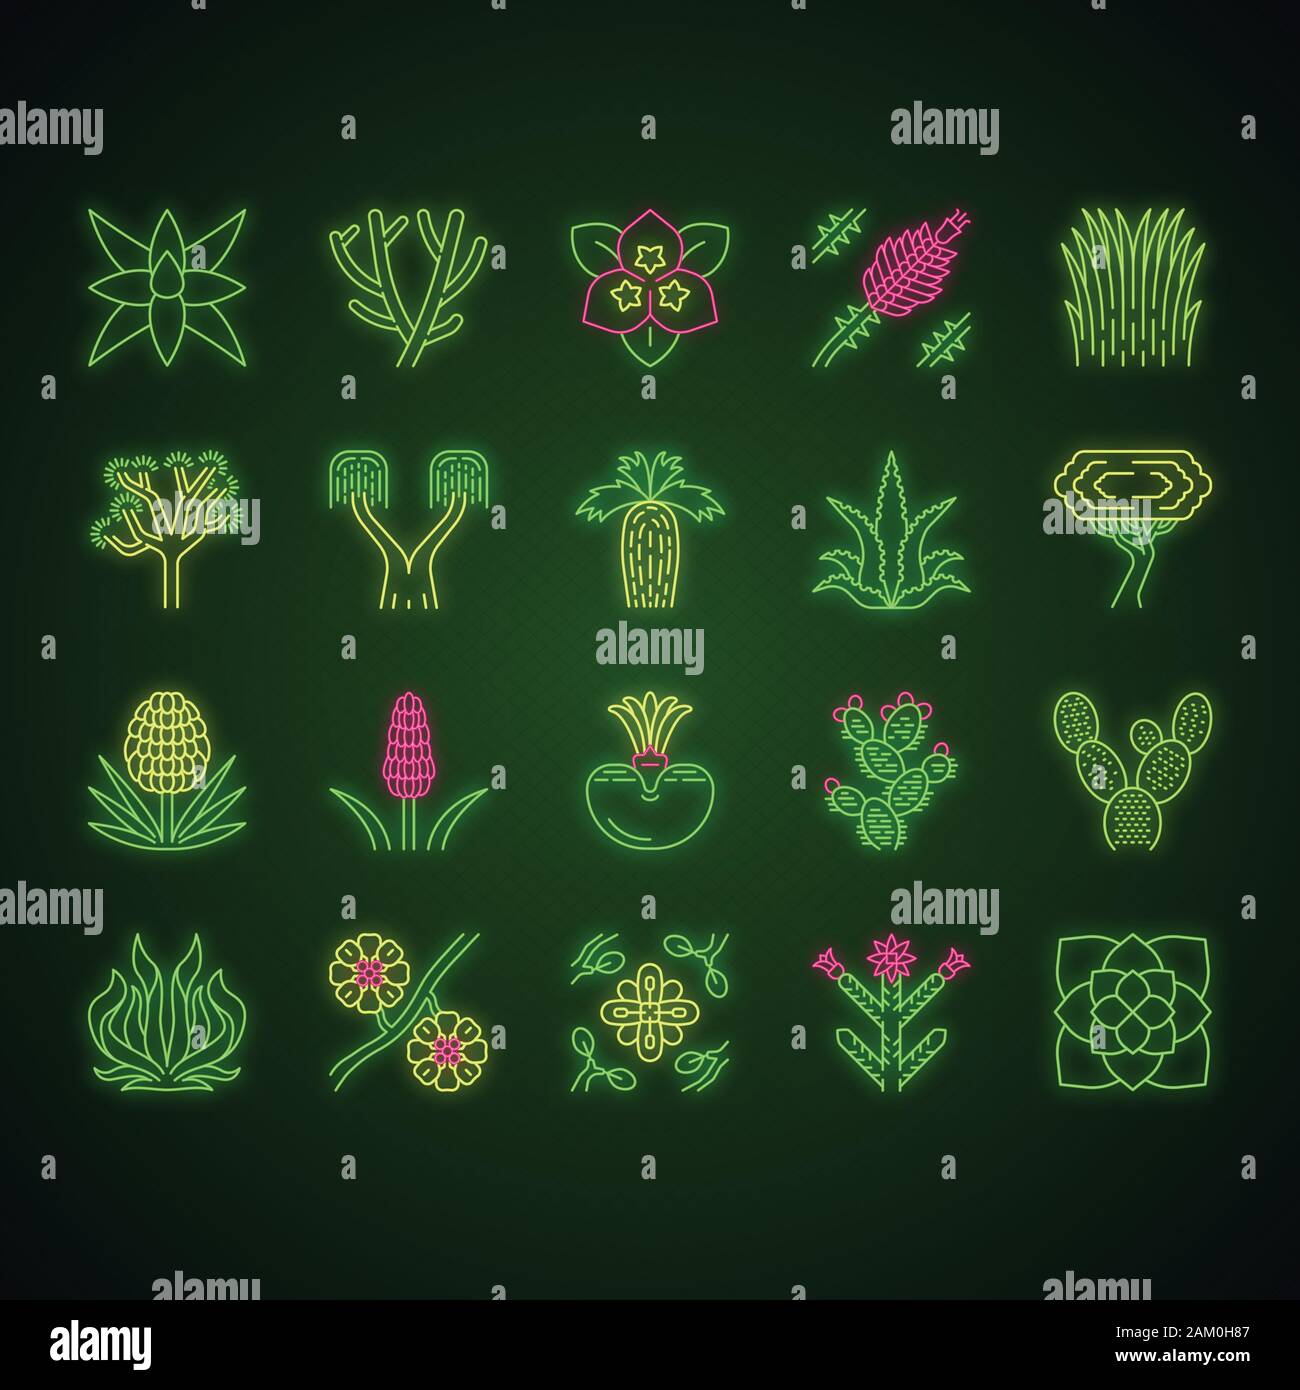 Wüstenpflanzen Neon Licht Symbole gesetzt. Exotischen Pflanzen. Kalifornien Wüste Kakteen, Gras und Bäumen. Amerikanische und mexikanische Sukkulenten, Palmen. Leuchtende Zeichen. Vec Stock Vektor